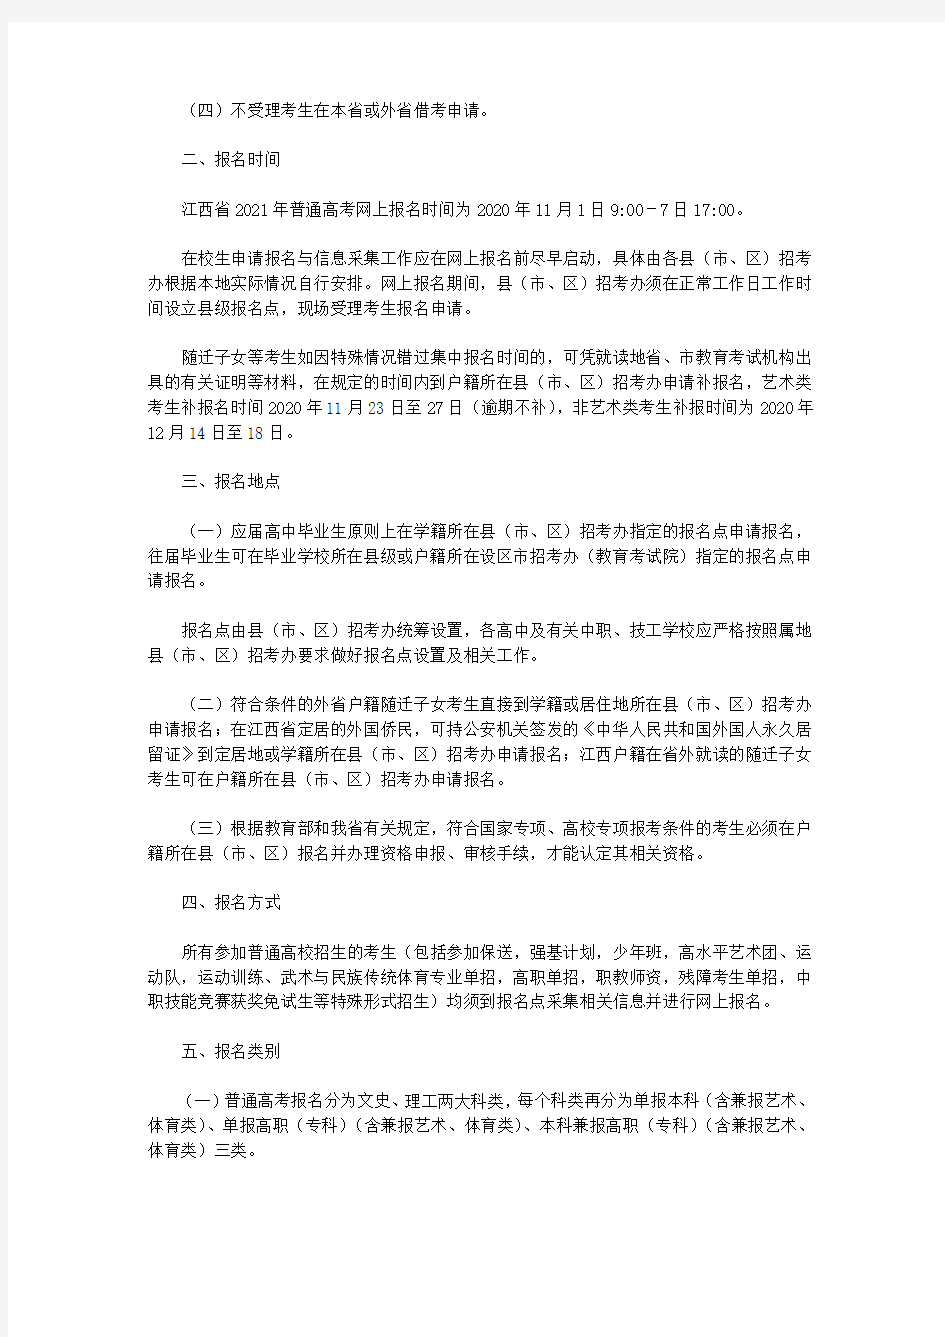 江西省2021年普通高等学校招生考试报名办法(2020)